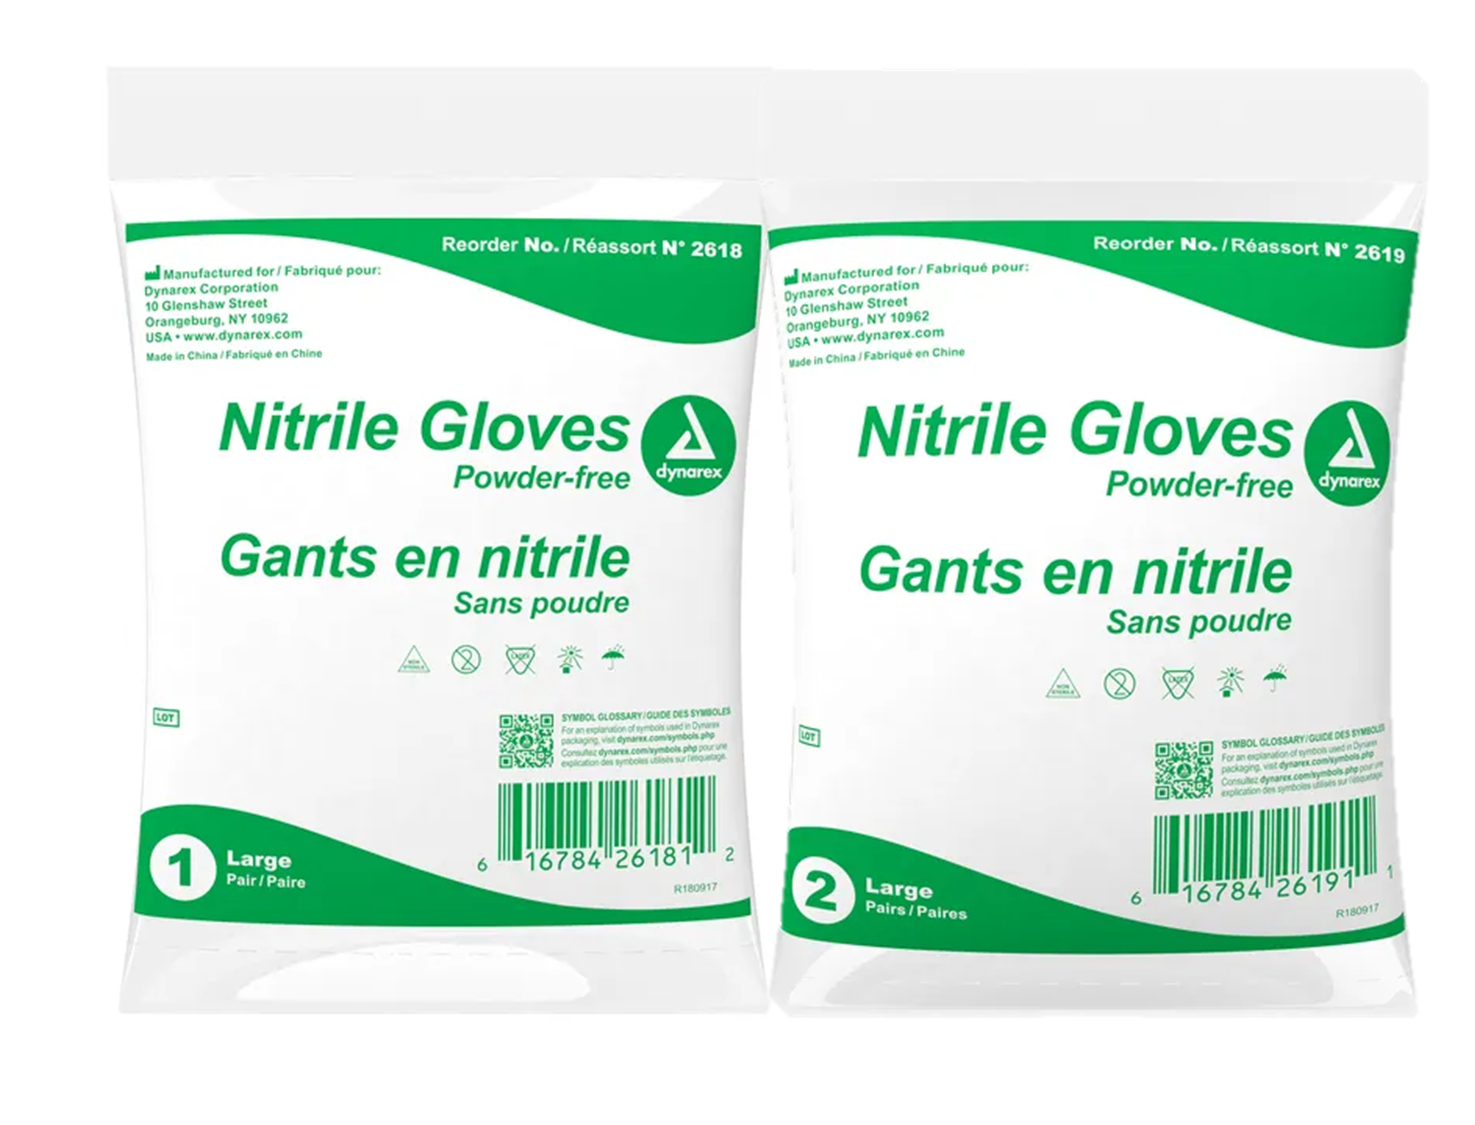 Dynarex Bagged Nitrile Gloves